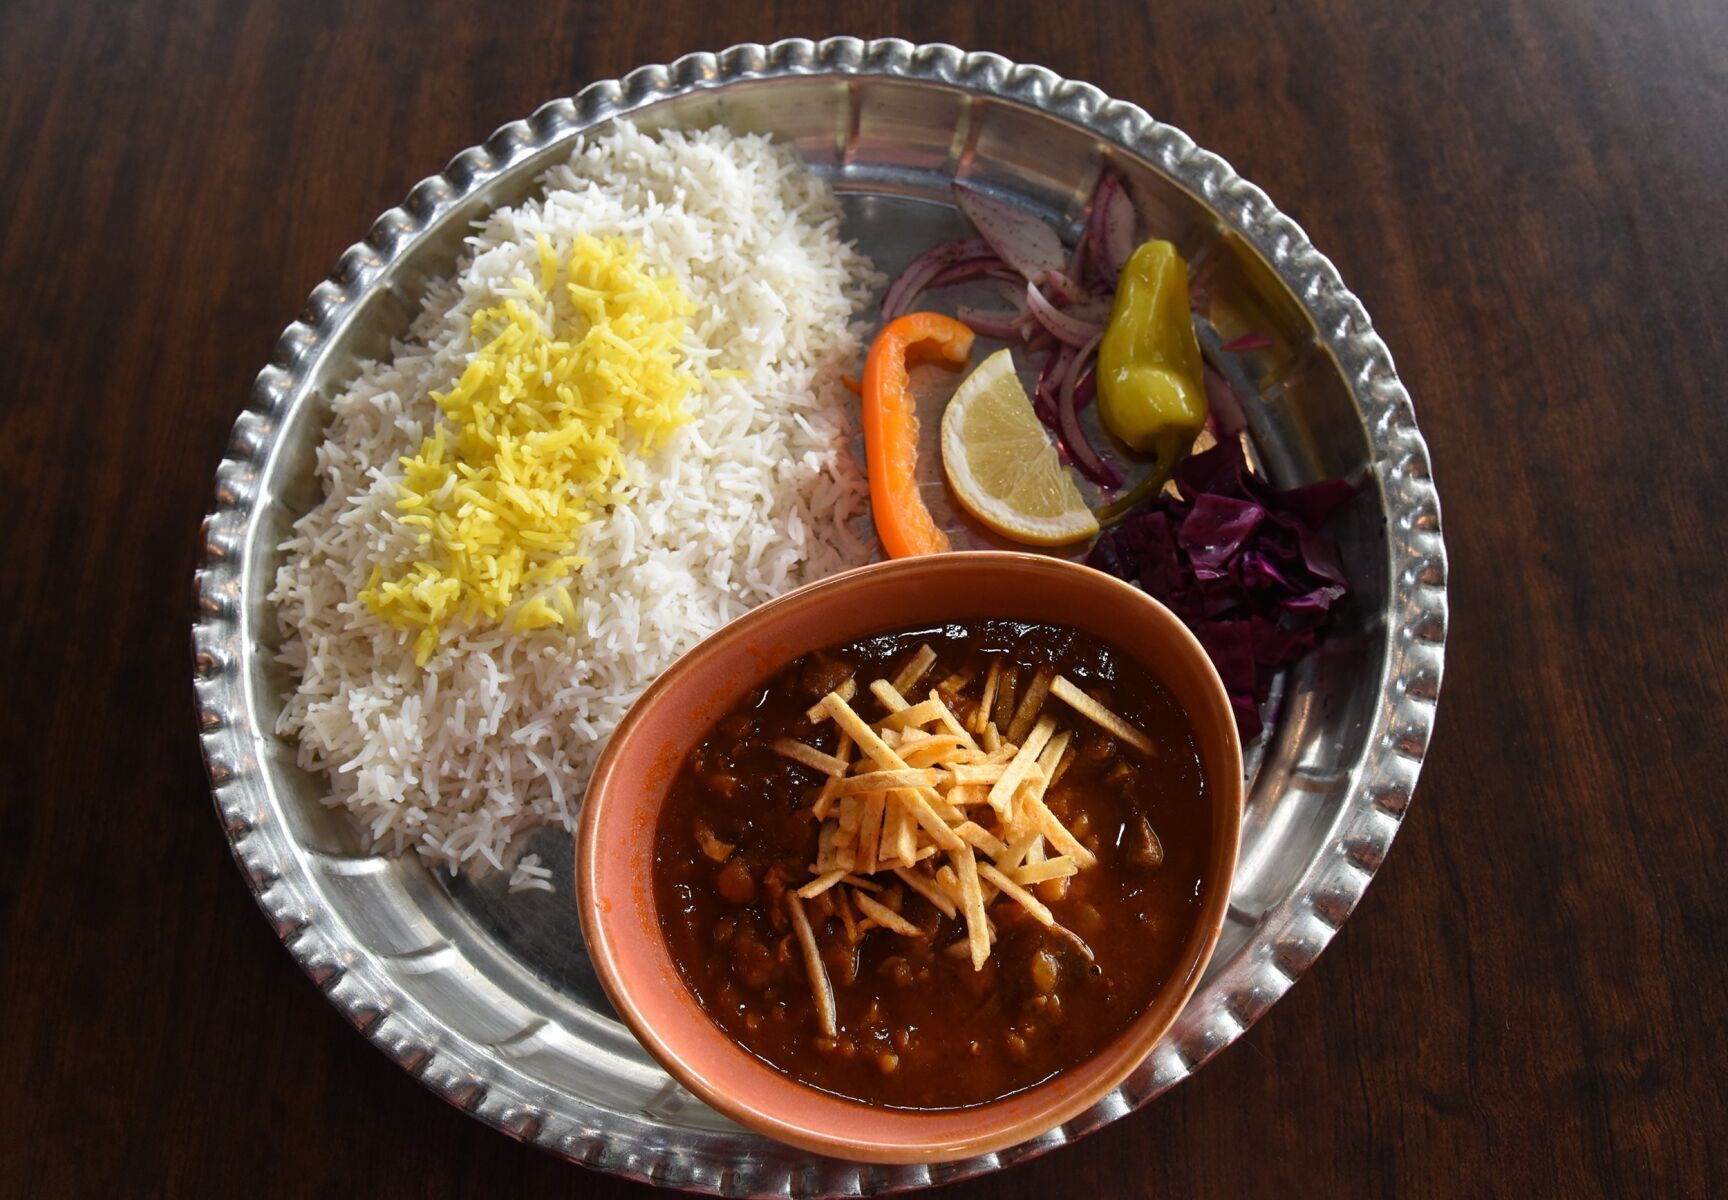 NEIGHBOURHOOD EATS Torang Restaurant offers Iranian cuisine, experience in Newmarket